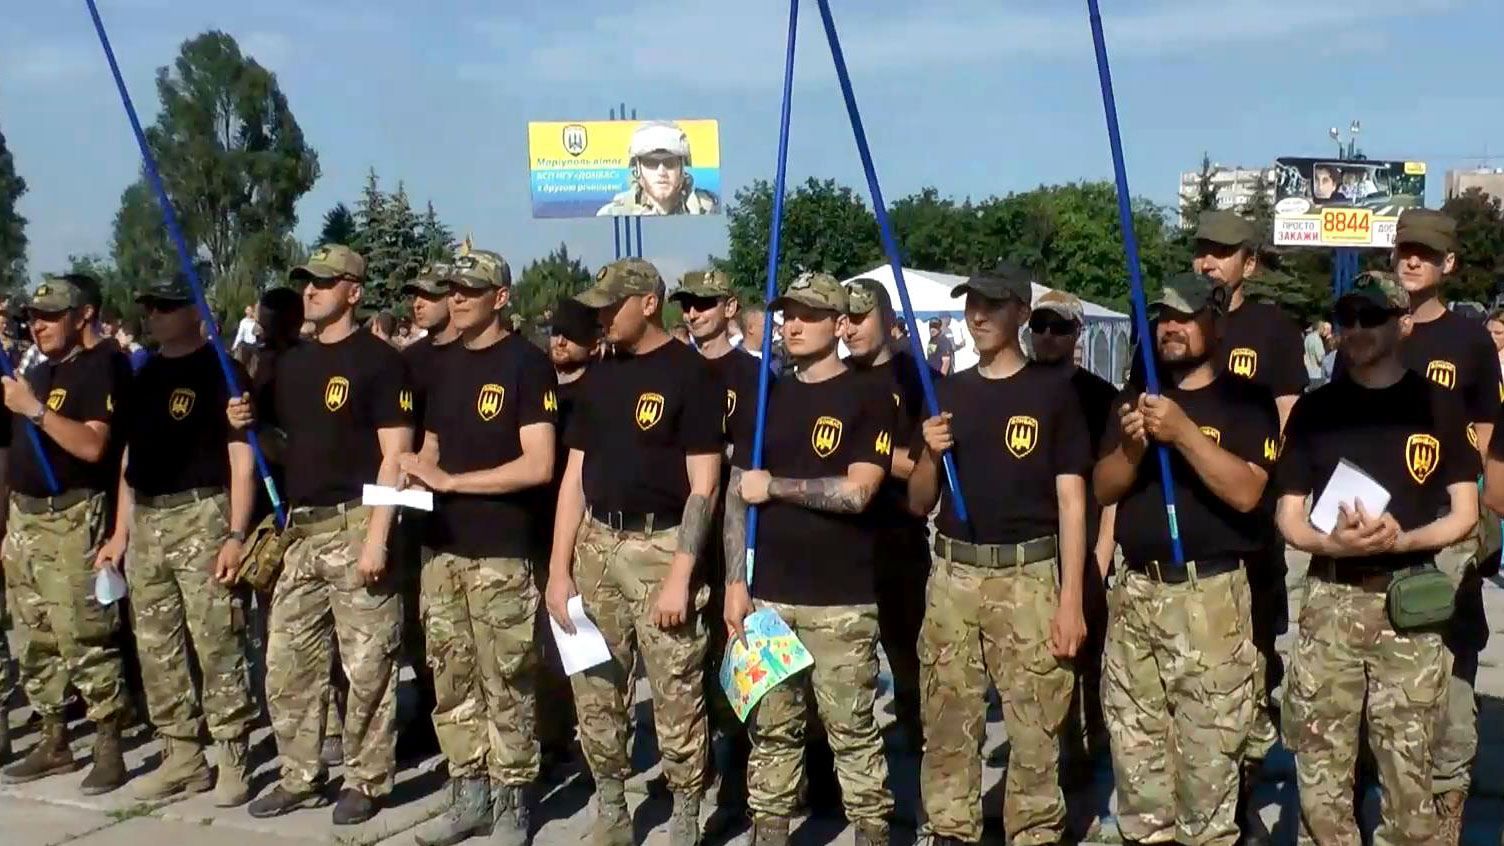 Друга річниця батальйону "Донбас": як бійці відзначили дату
